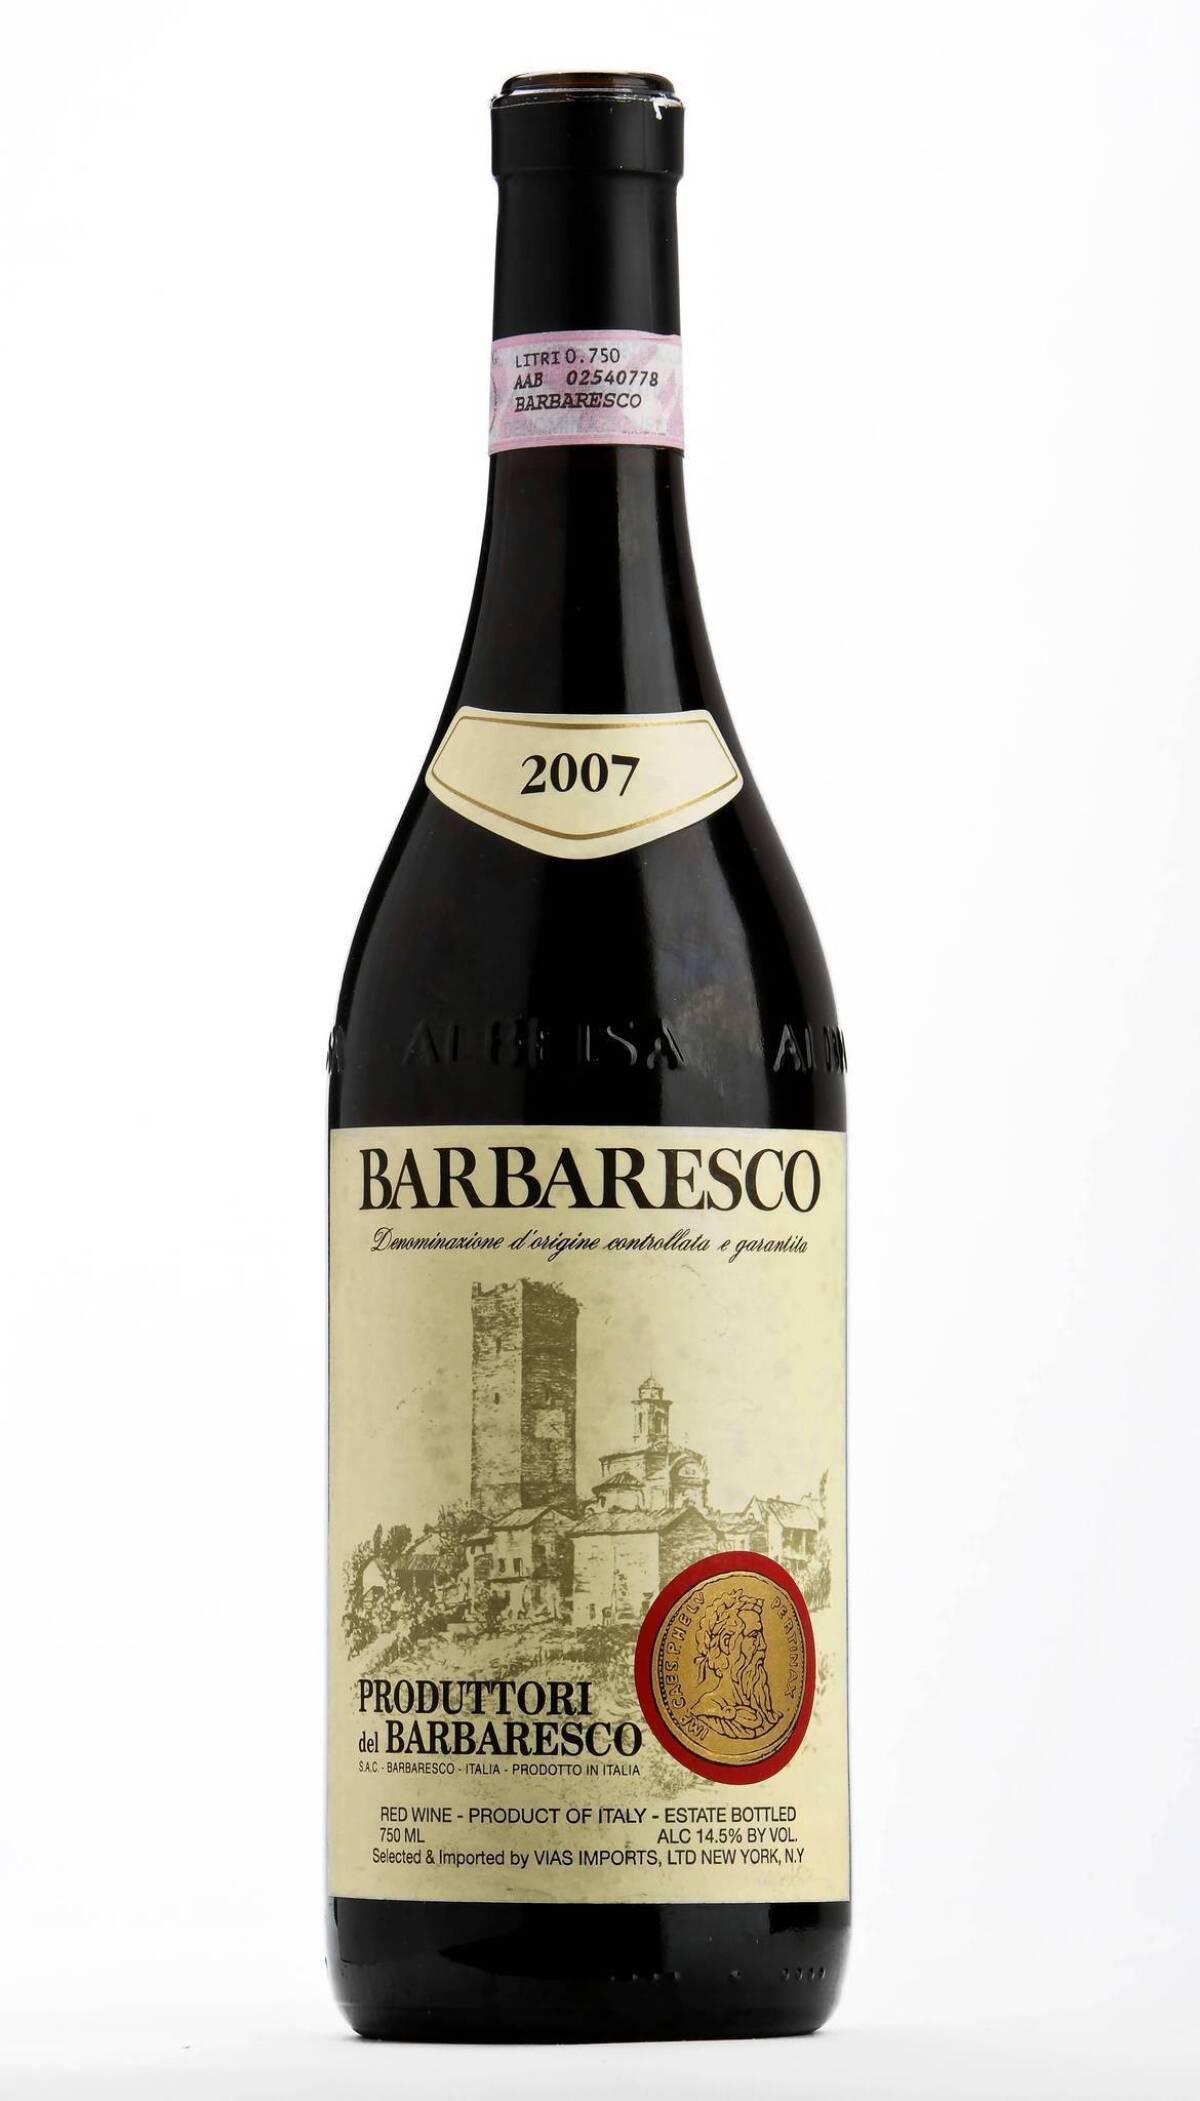 The 2007 Produttori del Barbaresco Barbaresco